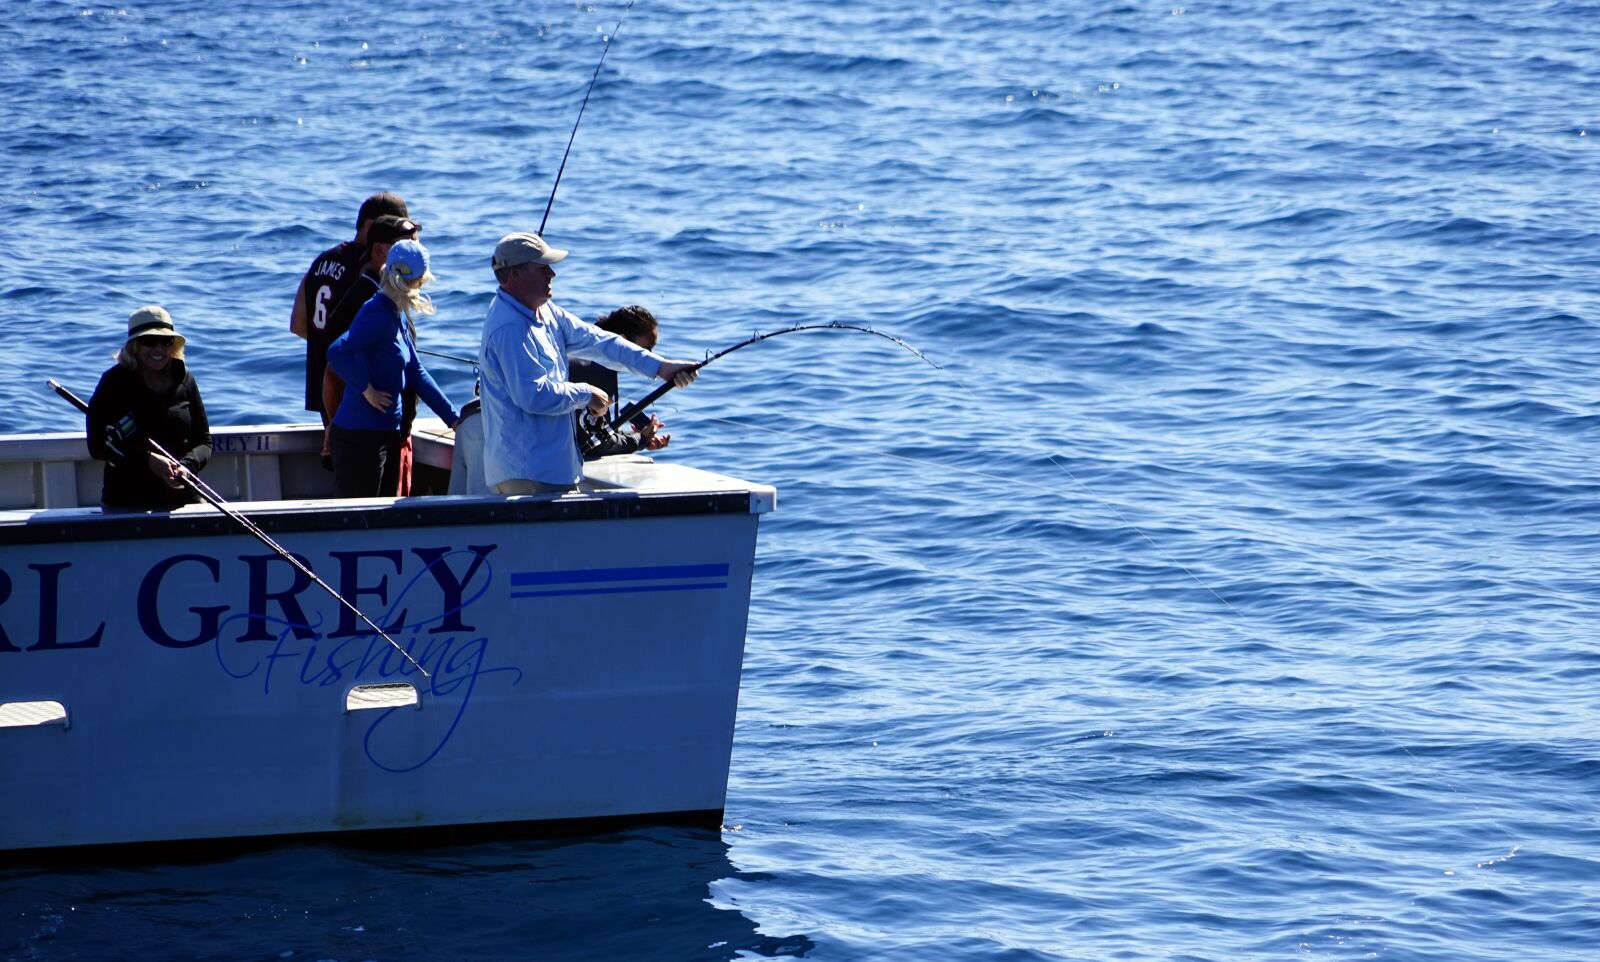 Sony a7 + Sony FE 24-240mm F3.5-6.3 OSS sample photo. Fish, deep sea fishing photography